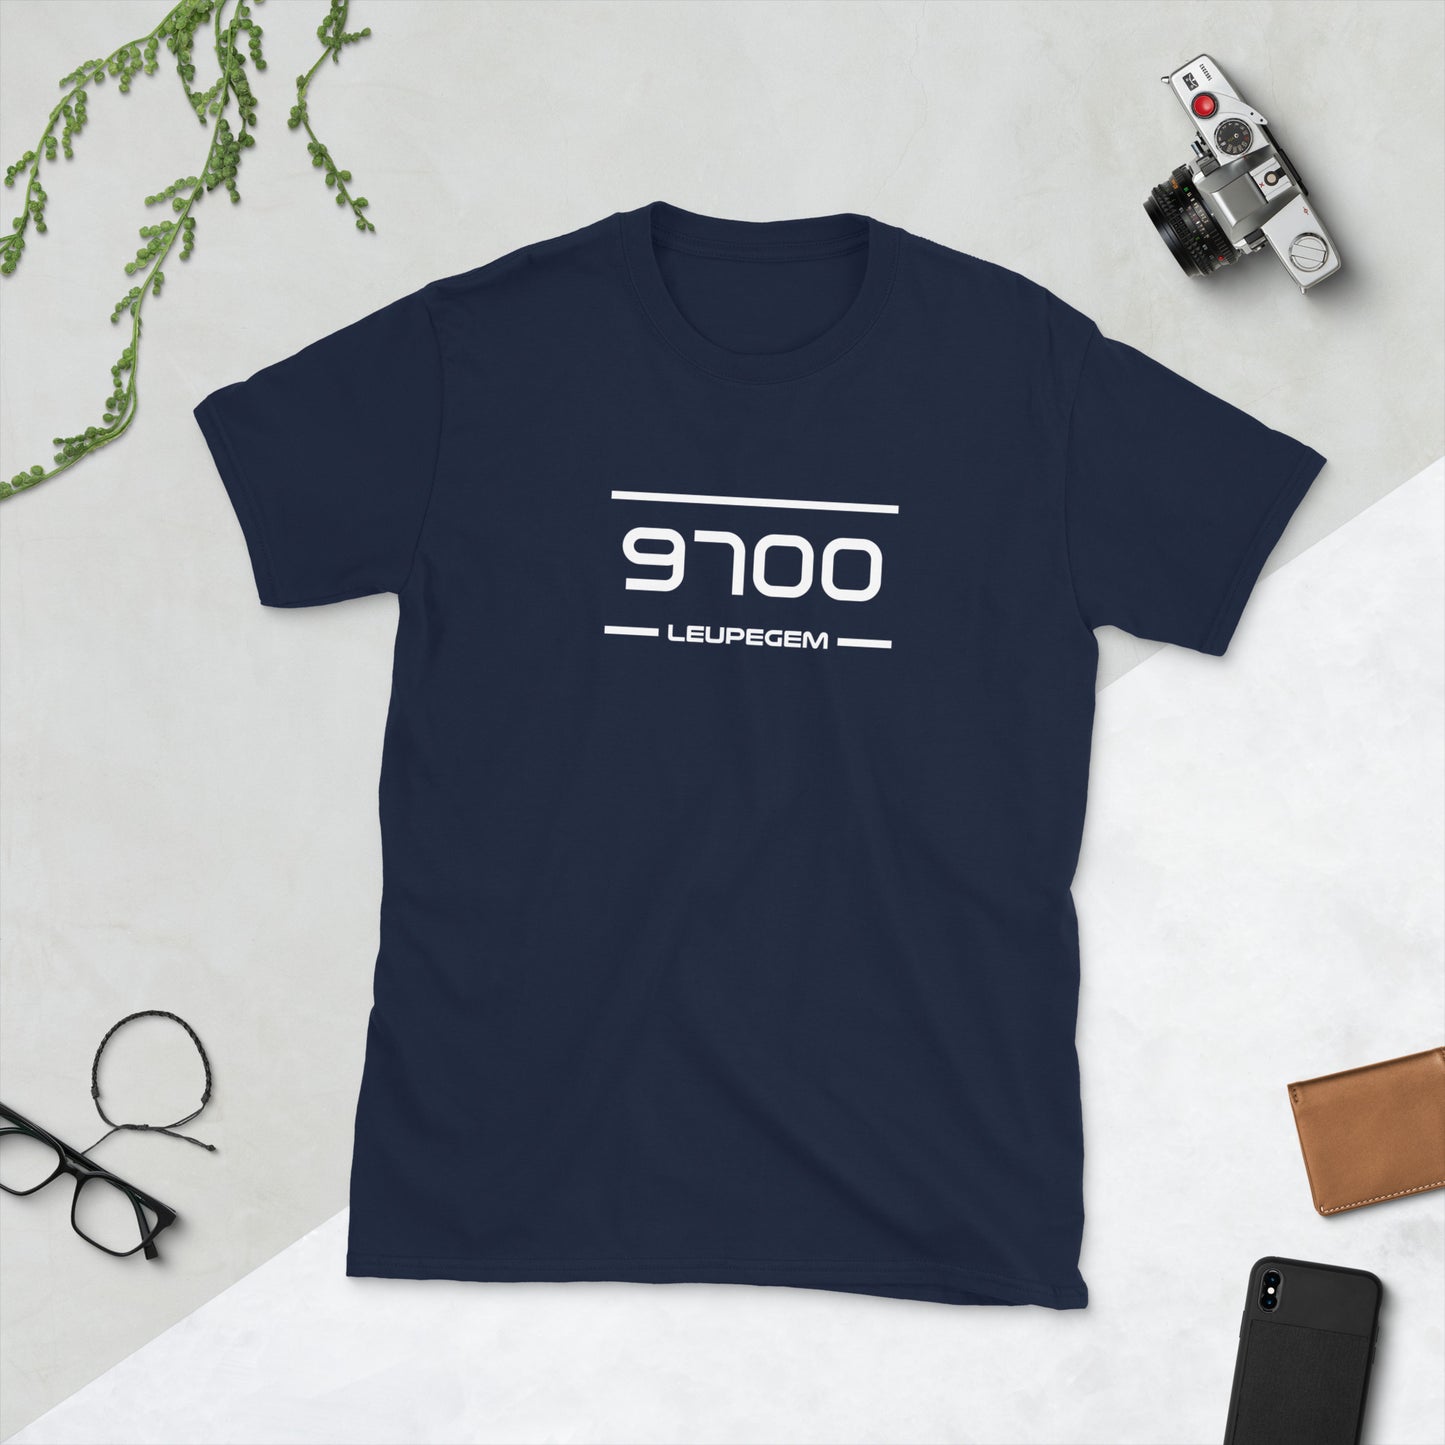 T-Shirt - 9700 - Leupegem